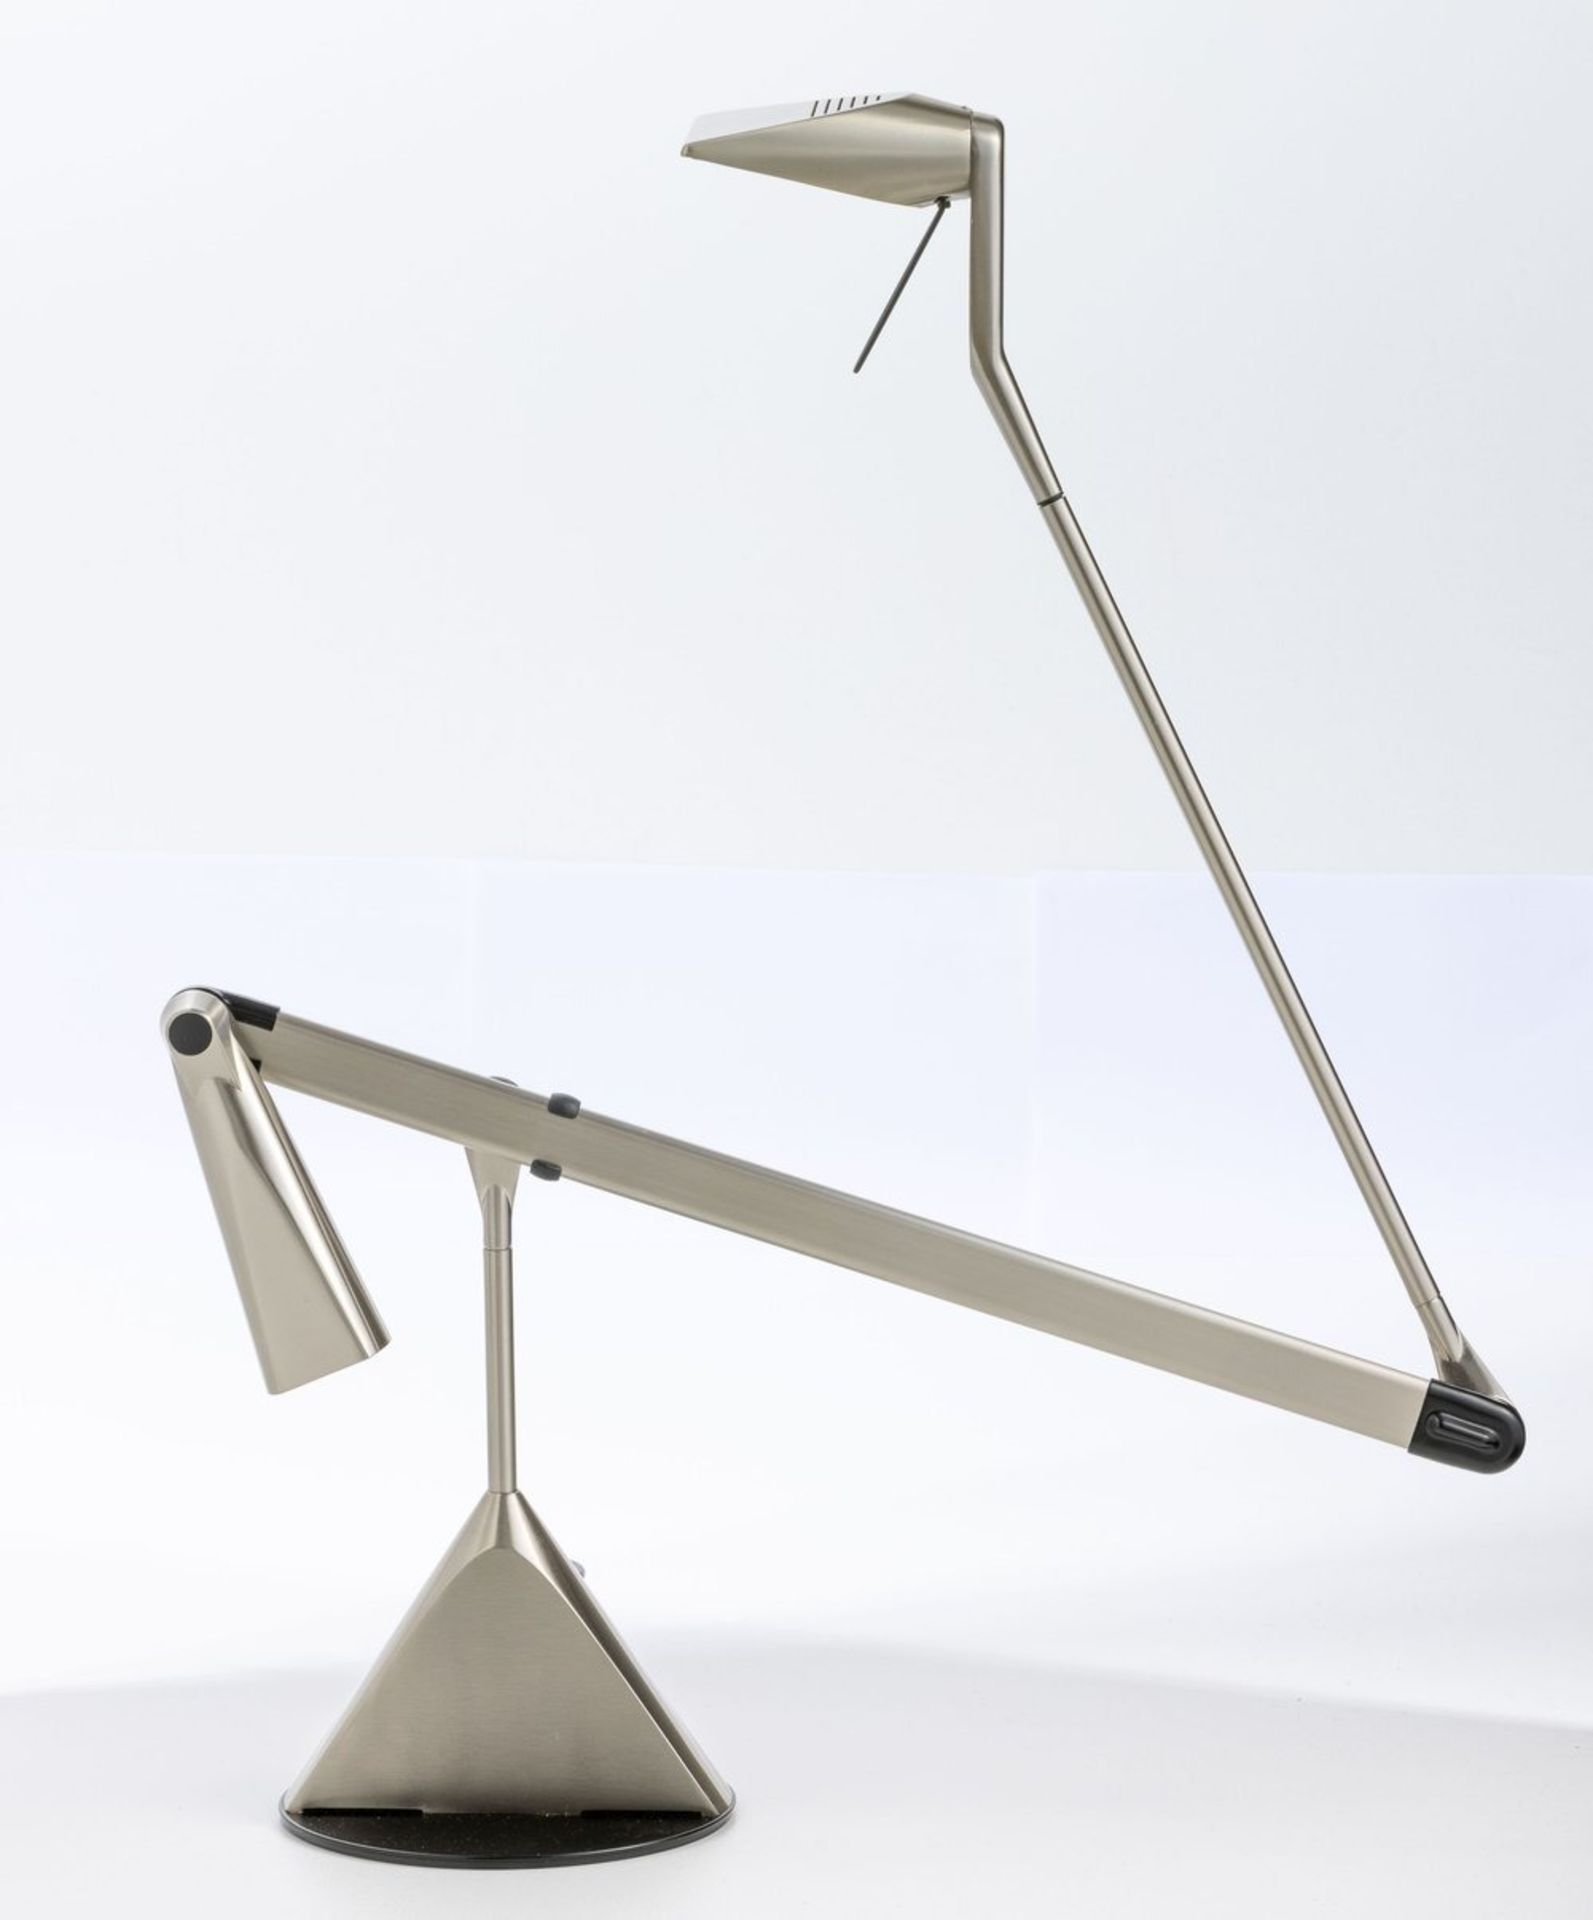 Schreibtischlampe "Zelig Tavolo" Walter Monici für Lumina, Italien - Image 2 of 3